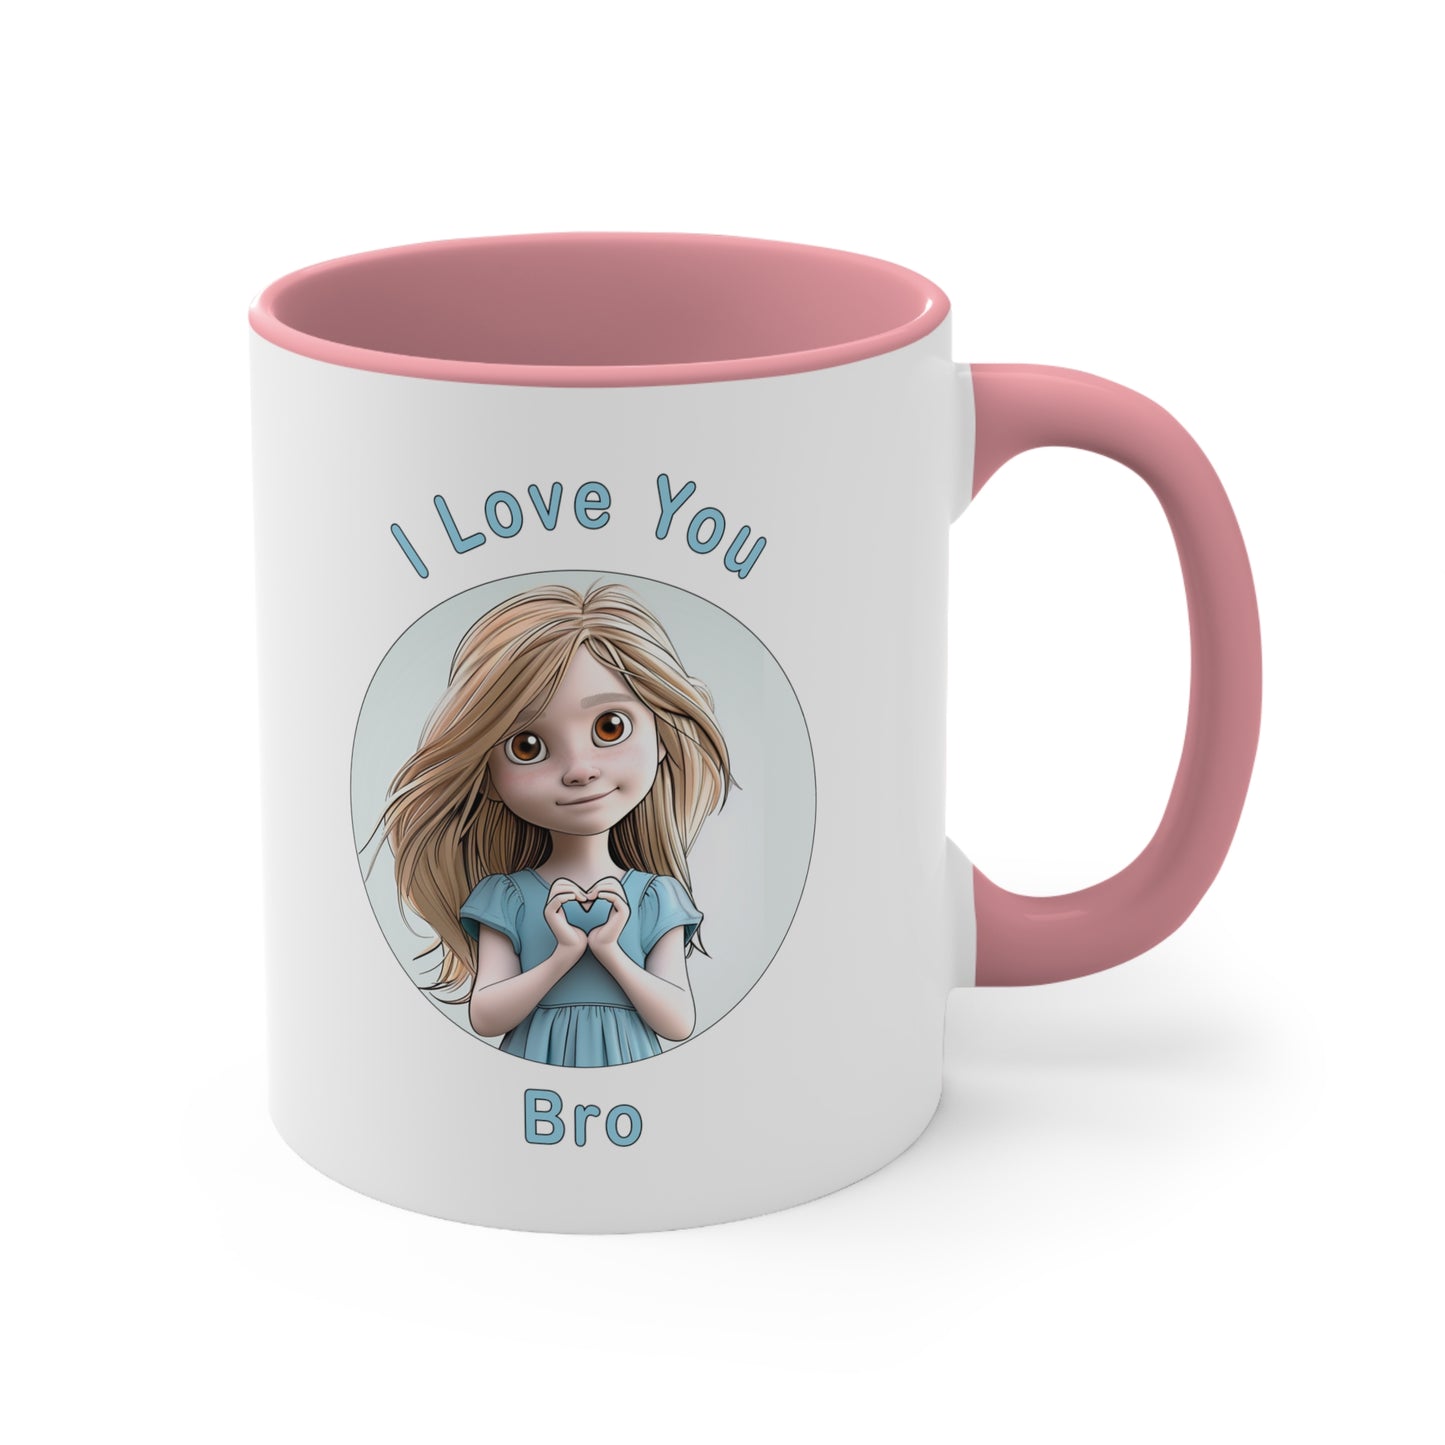 I love You Bro Coffee Mug, 11oz